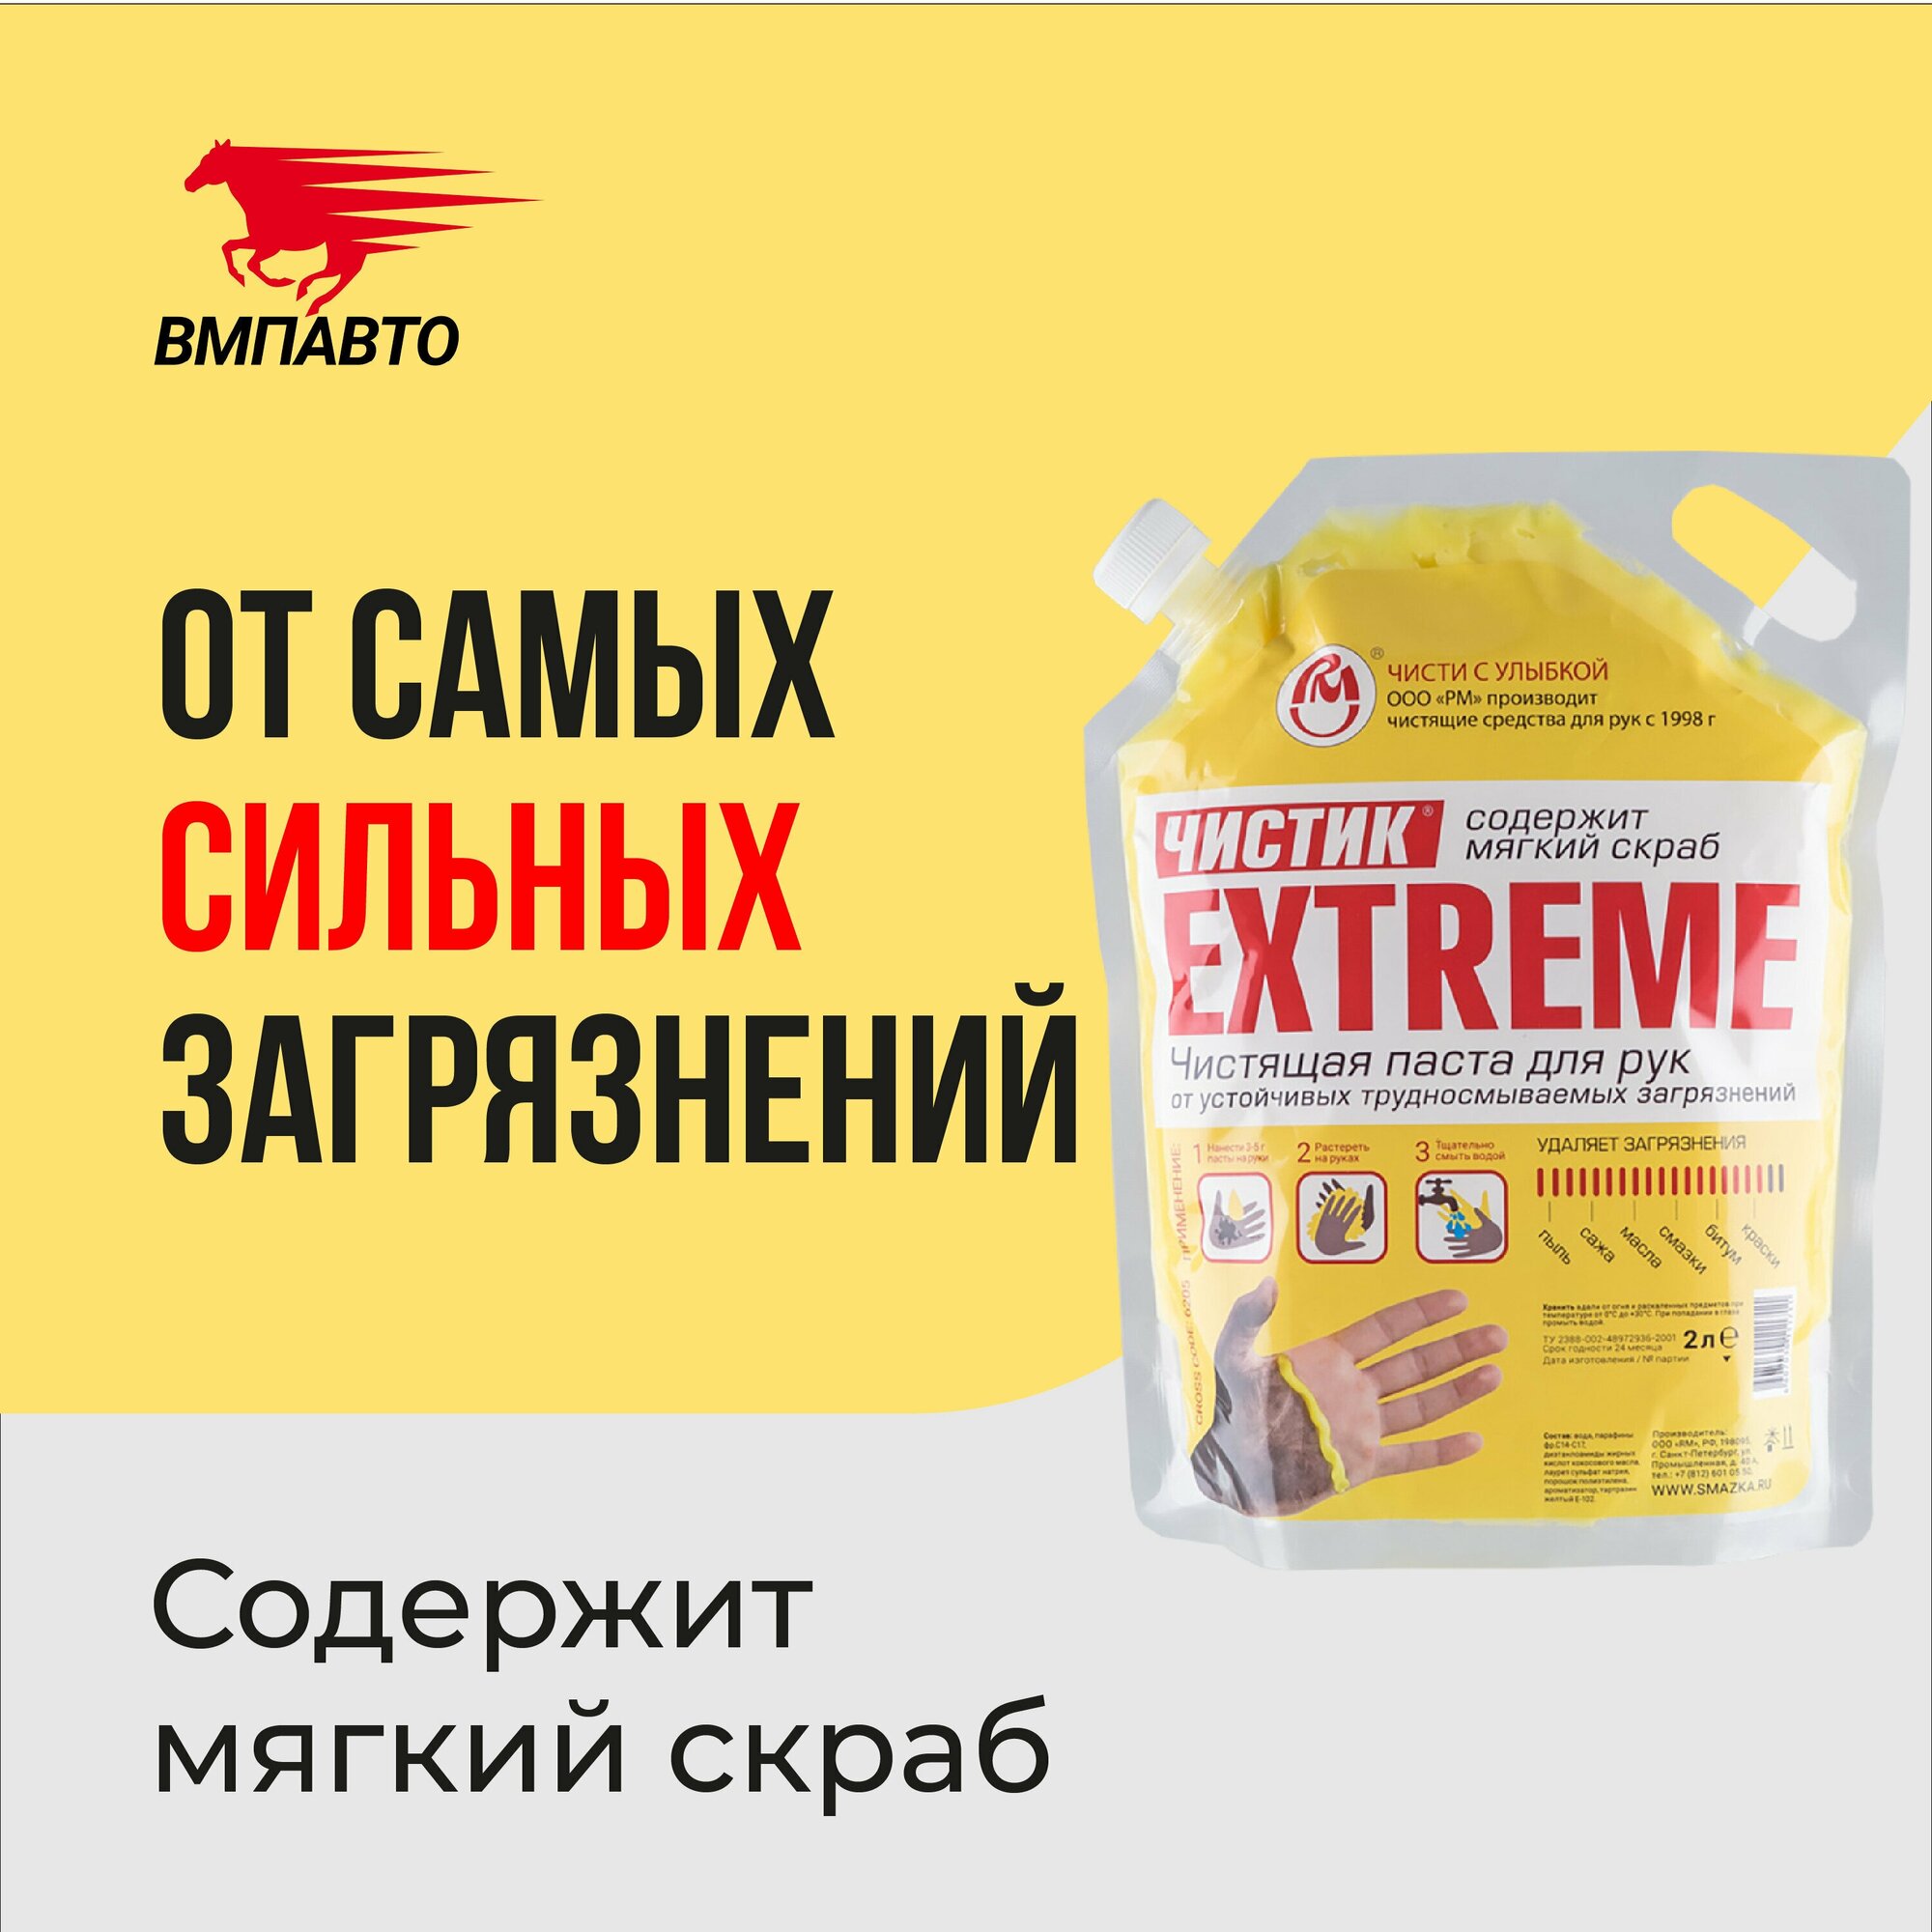 Паста для очистки рук от сильных загрязнений Чистик Extreme 2000 мл дой-пак, ВМПАВТО, очиститель рук — купить в интернет-магазине по низкой цене на Яндекс Маркете